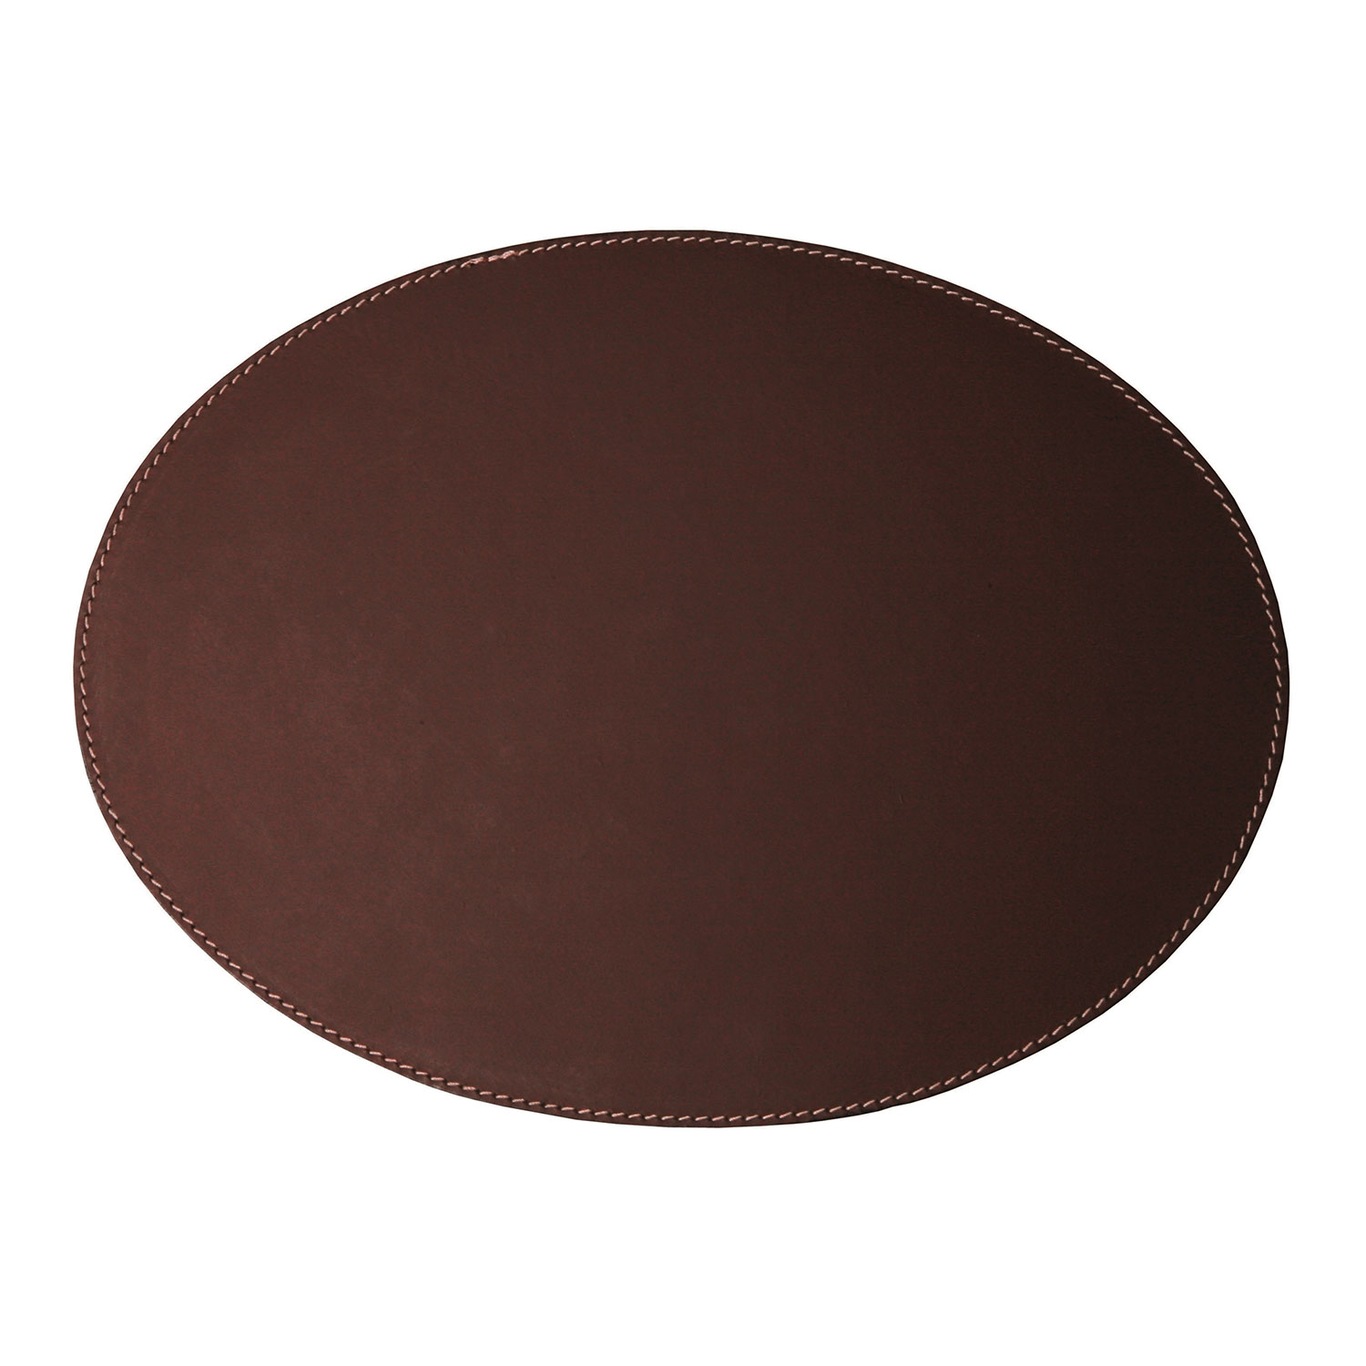 Bordbrikke Oval 35x48 cm, Sjokoladebrun